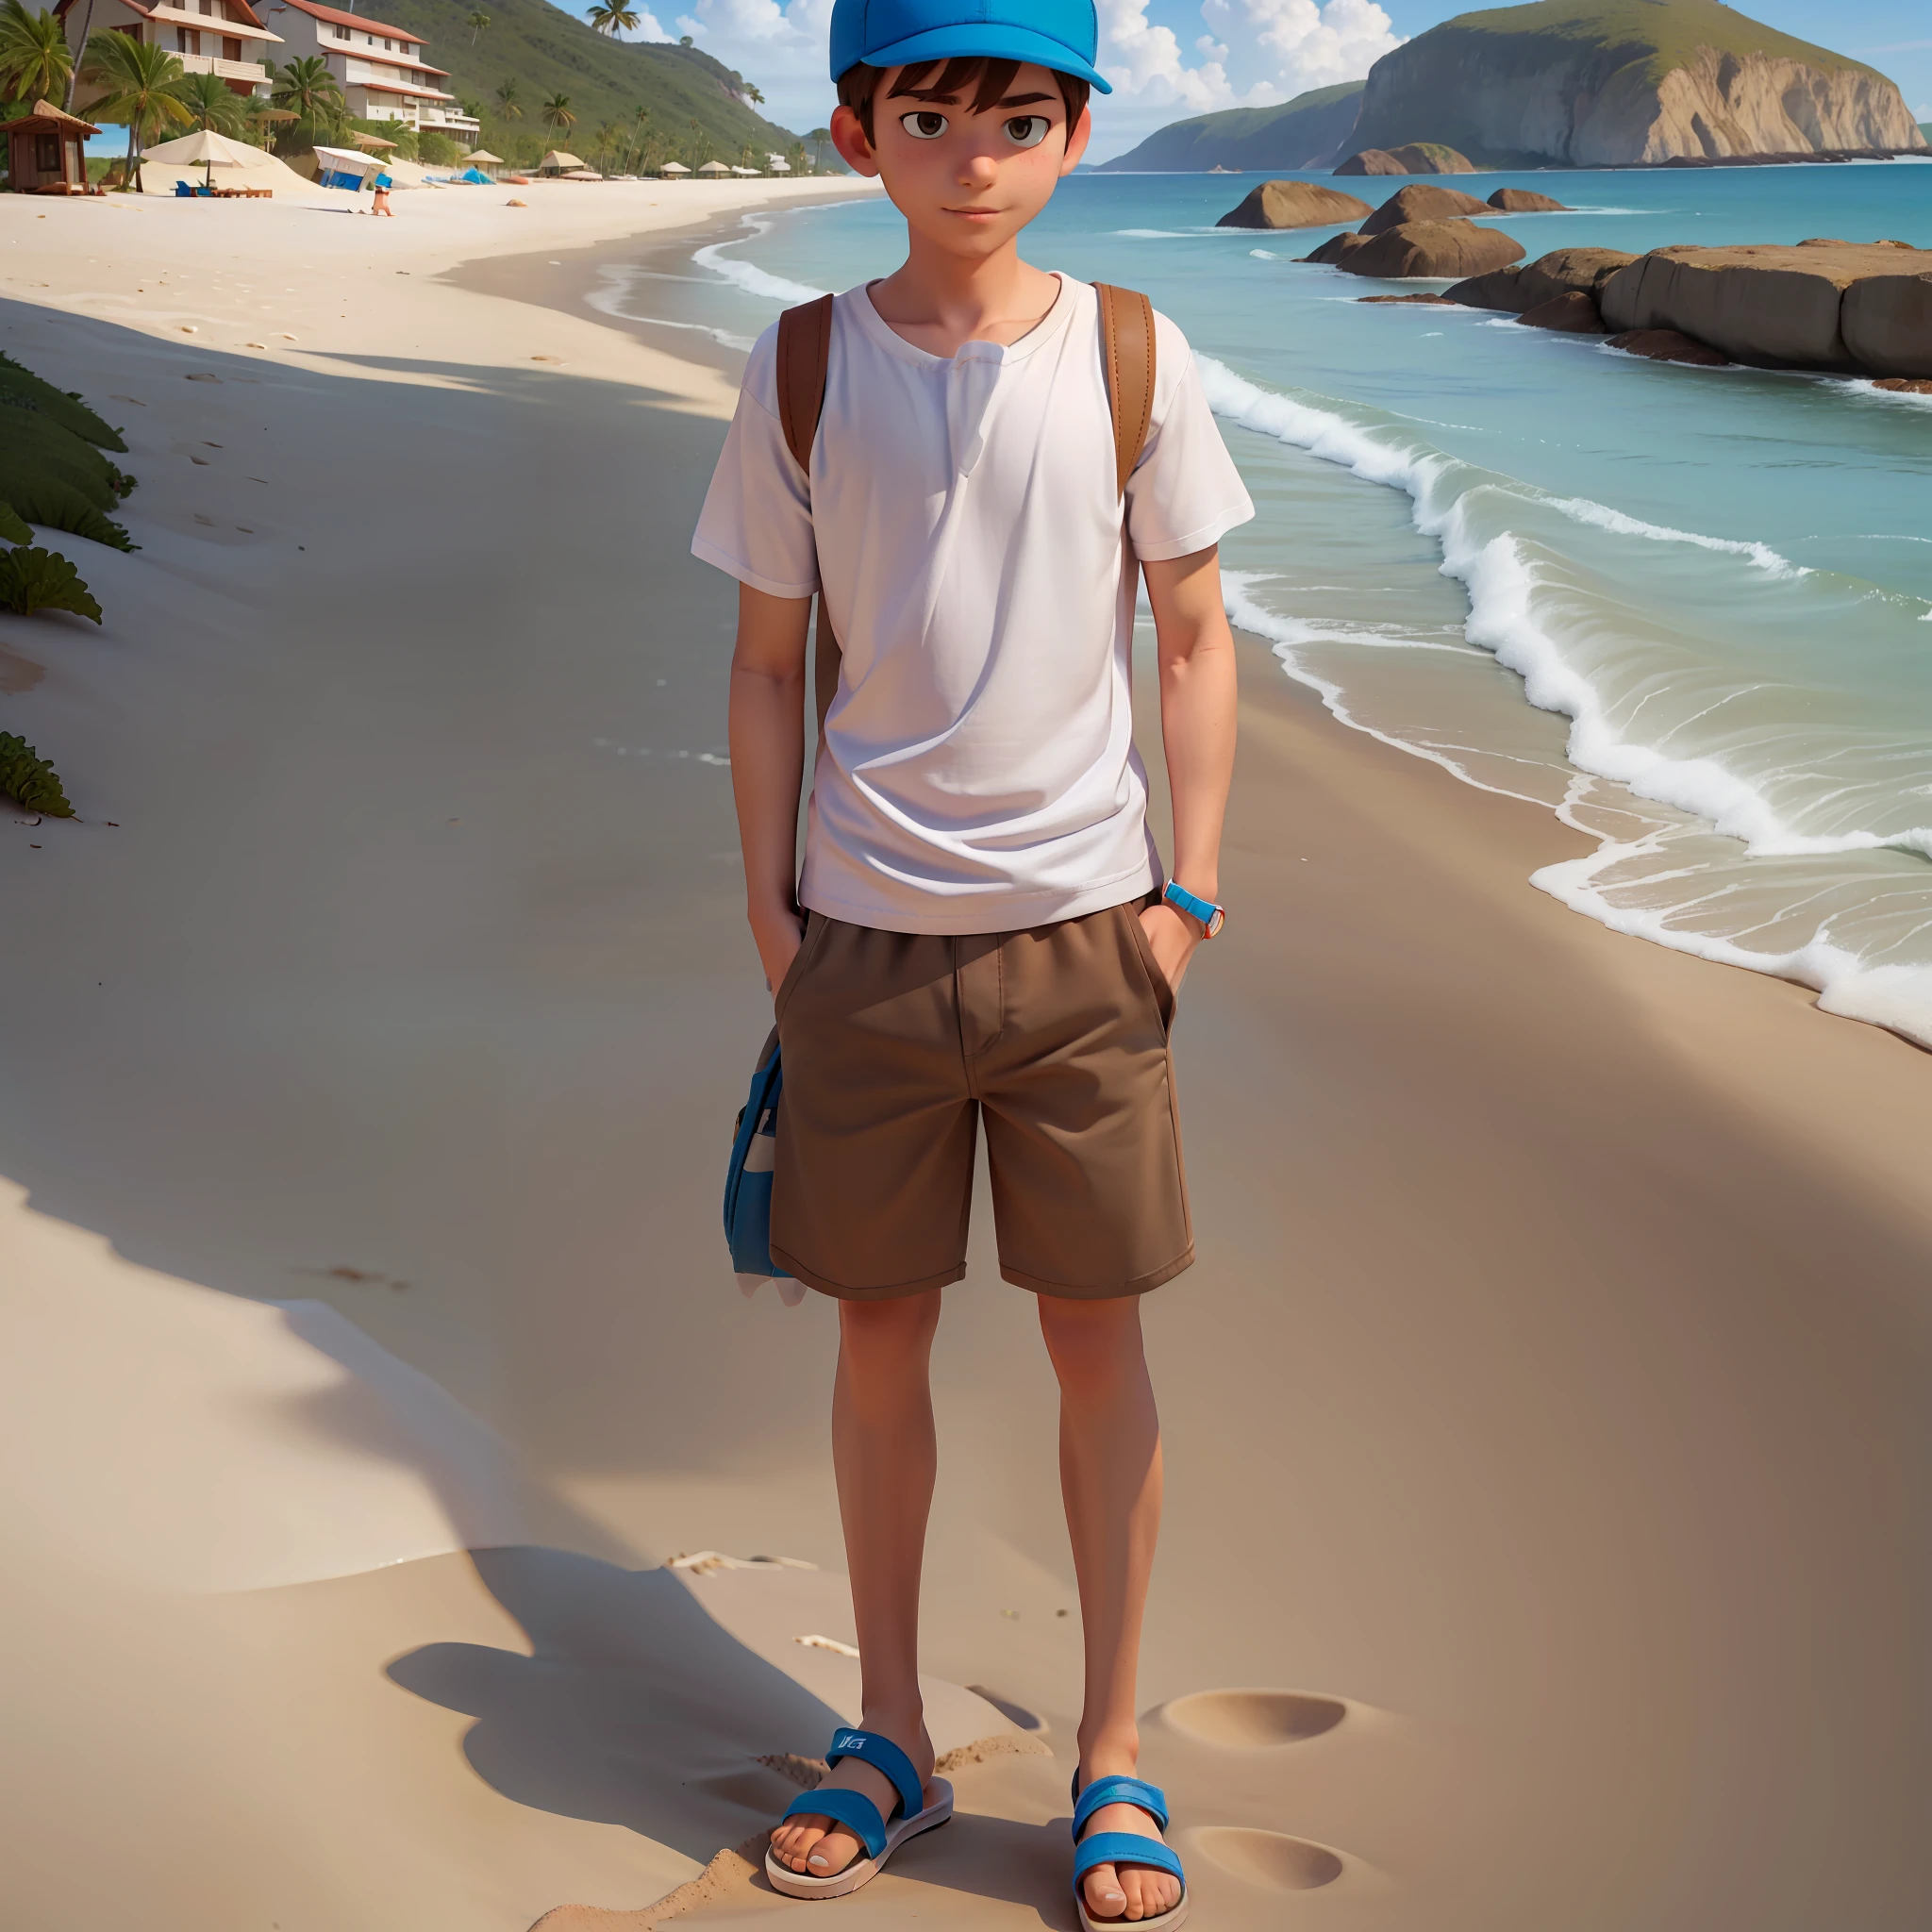 (1 lindo personaje llamado Mike), (vistiendo una camiseta blanca, tiene, pantalones cortos marrones, chancletas), (playa al fondo)